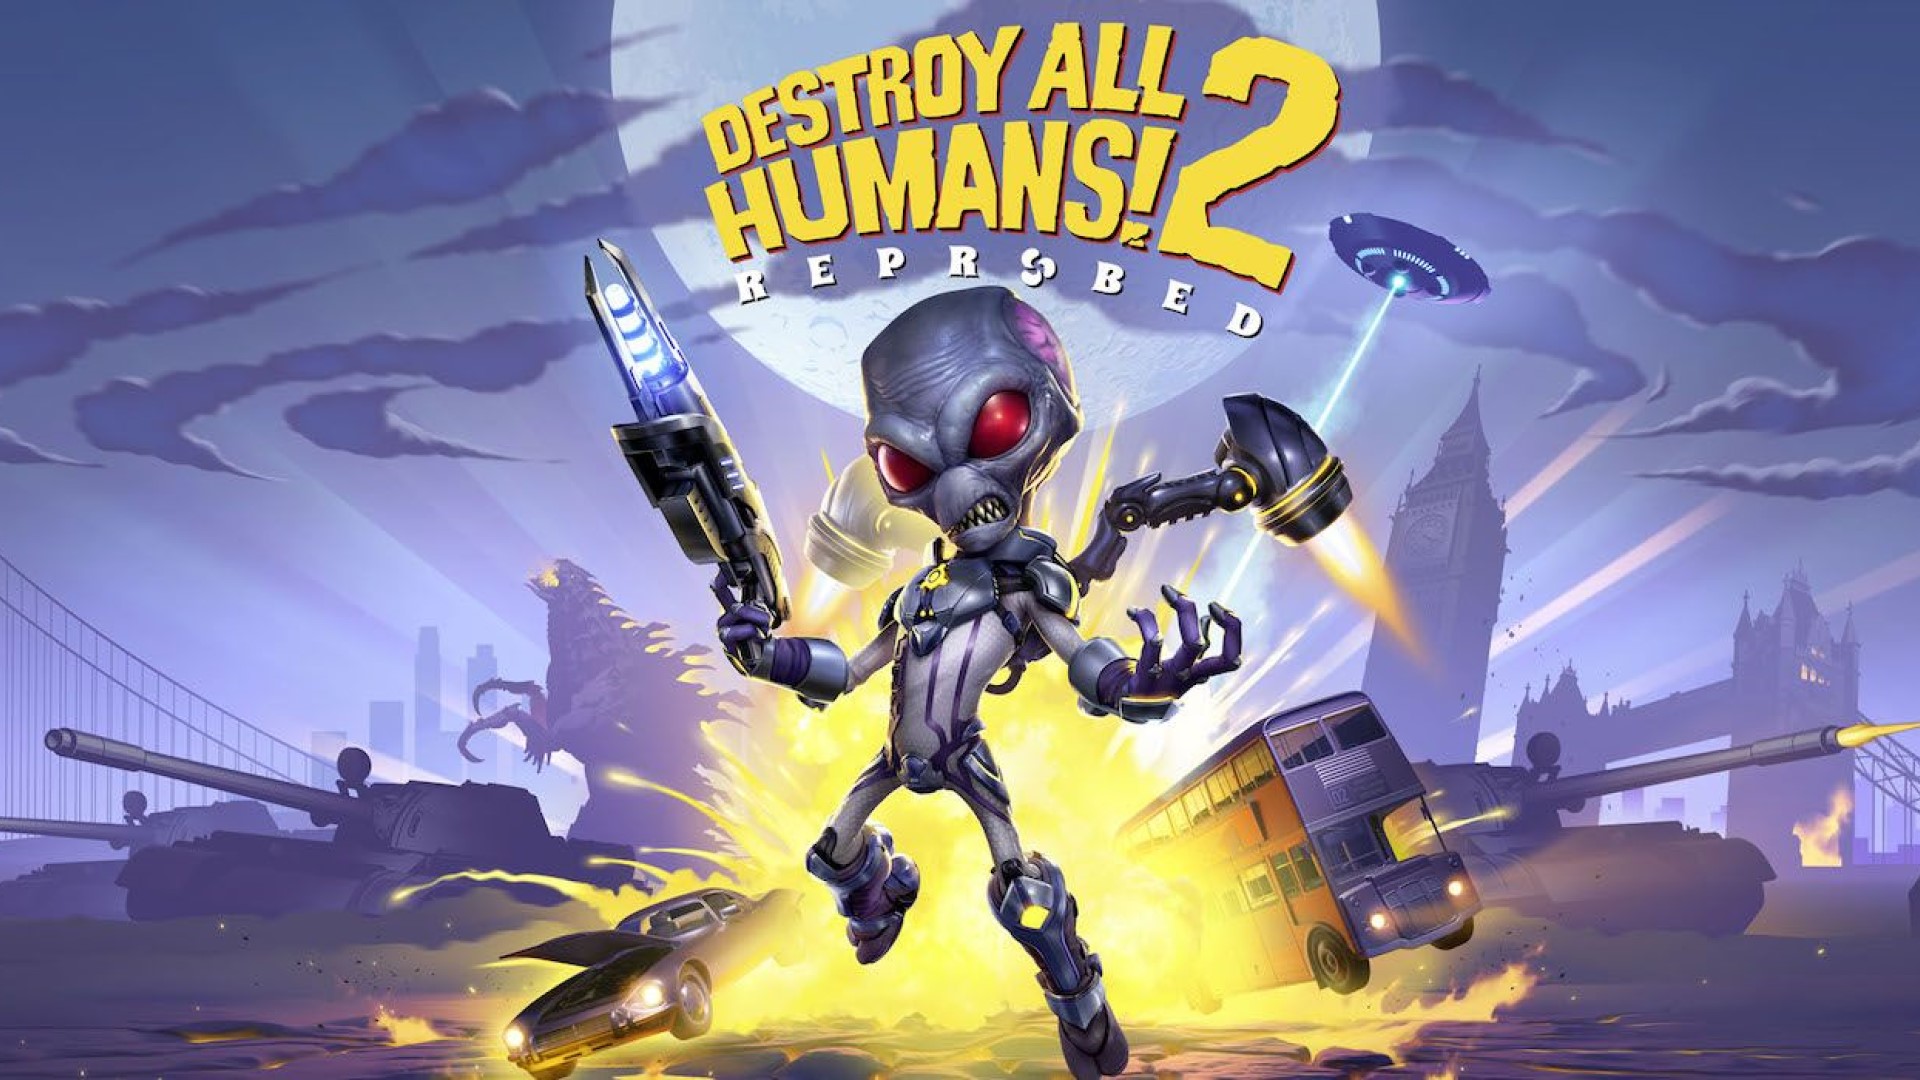 اعلام تاریخ انتشار بازی Destroy All Humans! 2 - Reprobed با انتشار تریلر جدید